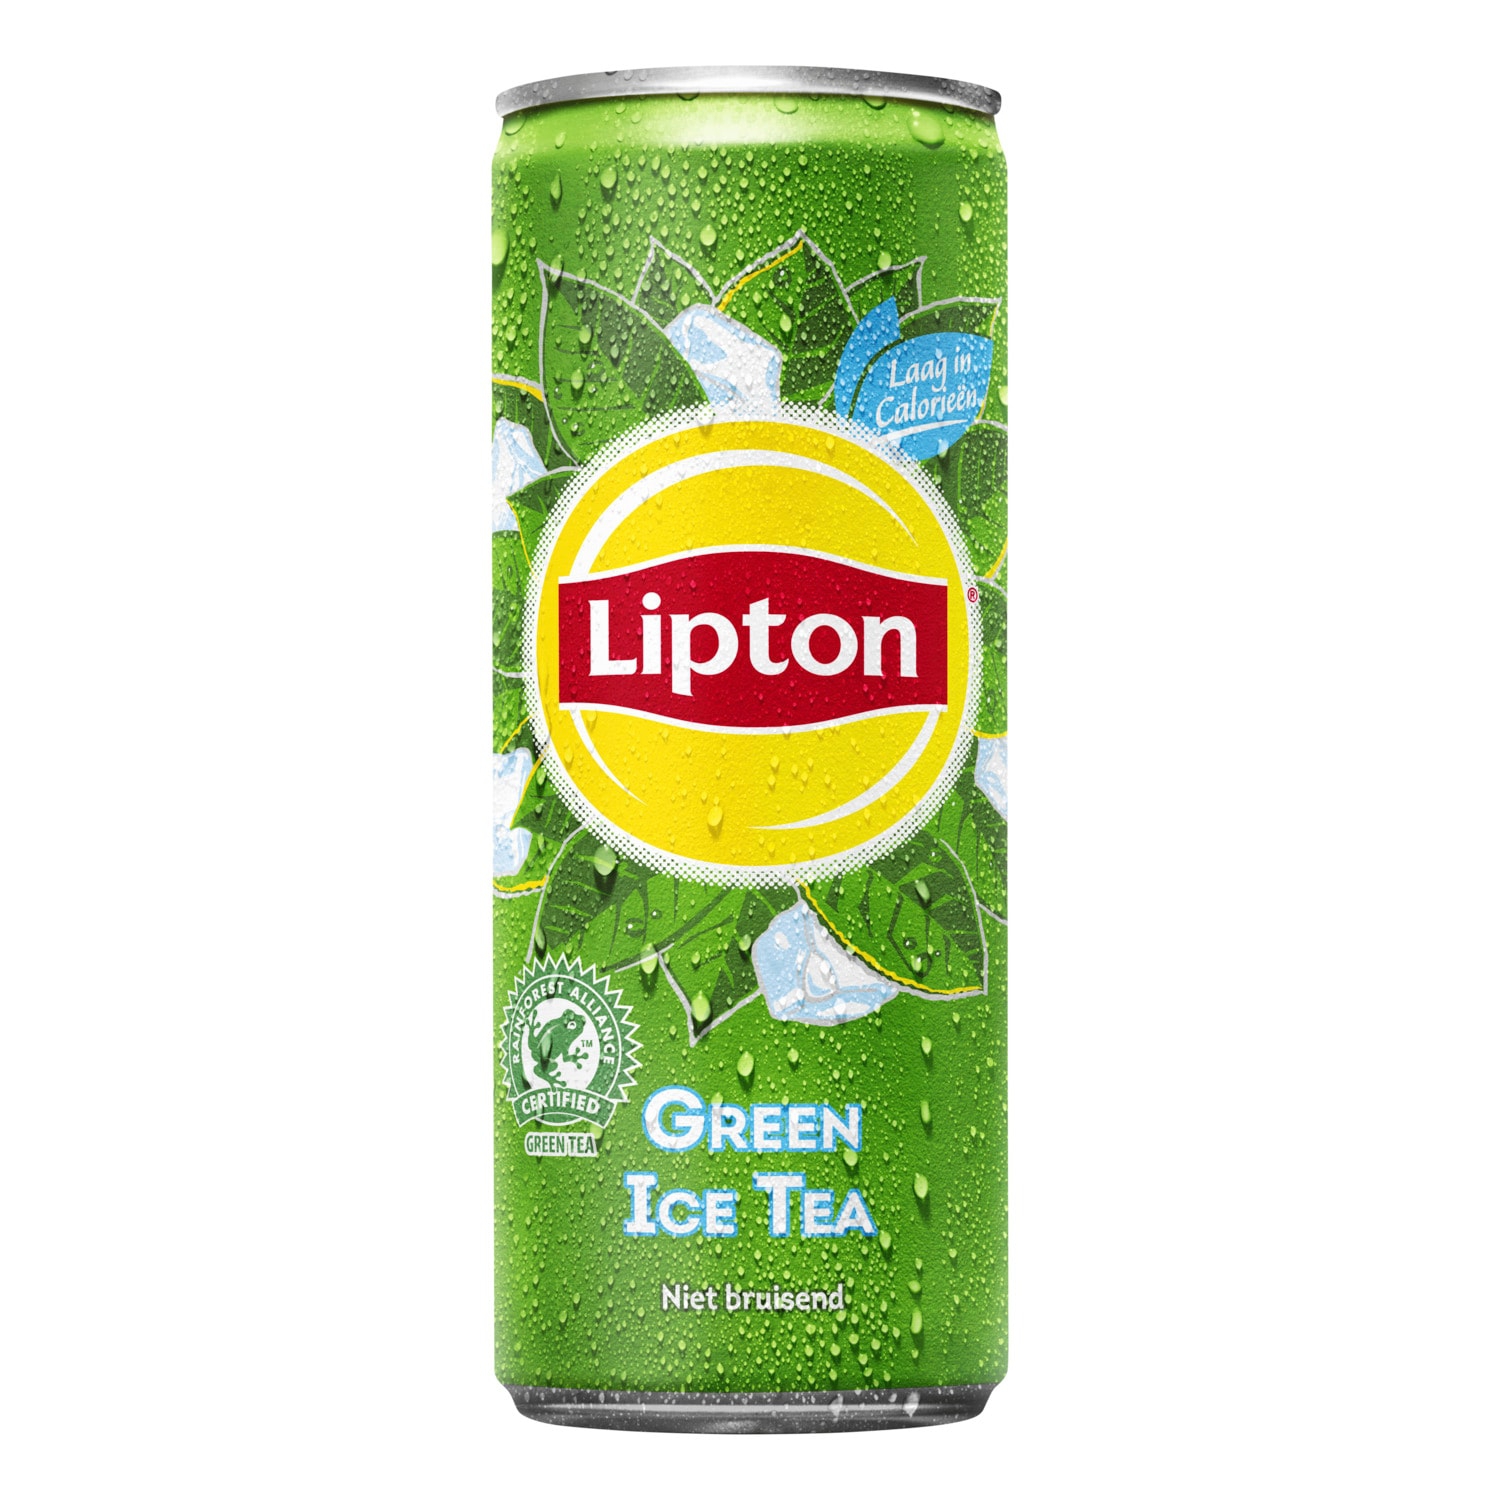 Картинки липтона. Липтон 0.25. Чай Липтон зеленый чай 0,5. Липтон зелёный холодный чай. Липтон Ice Tea.